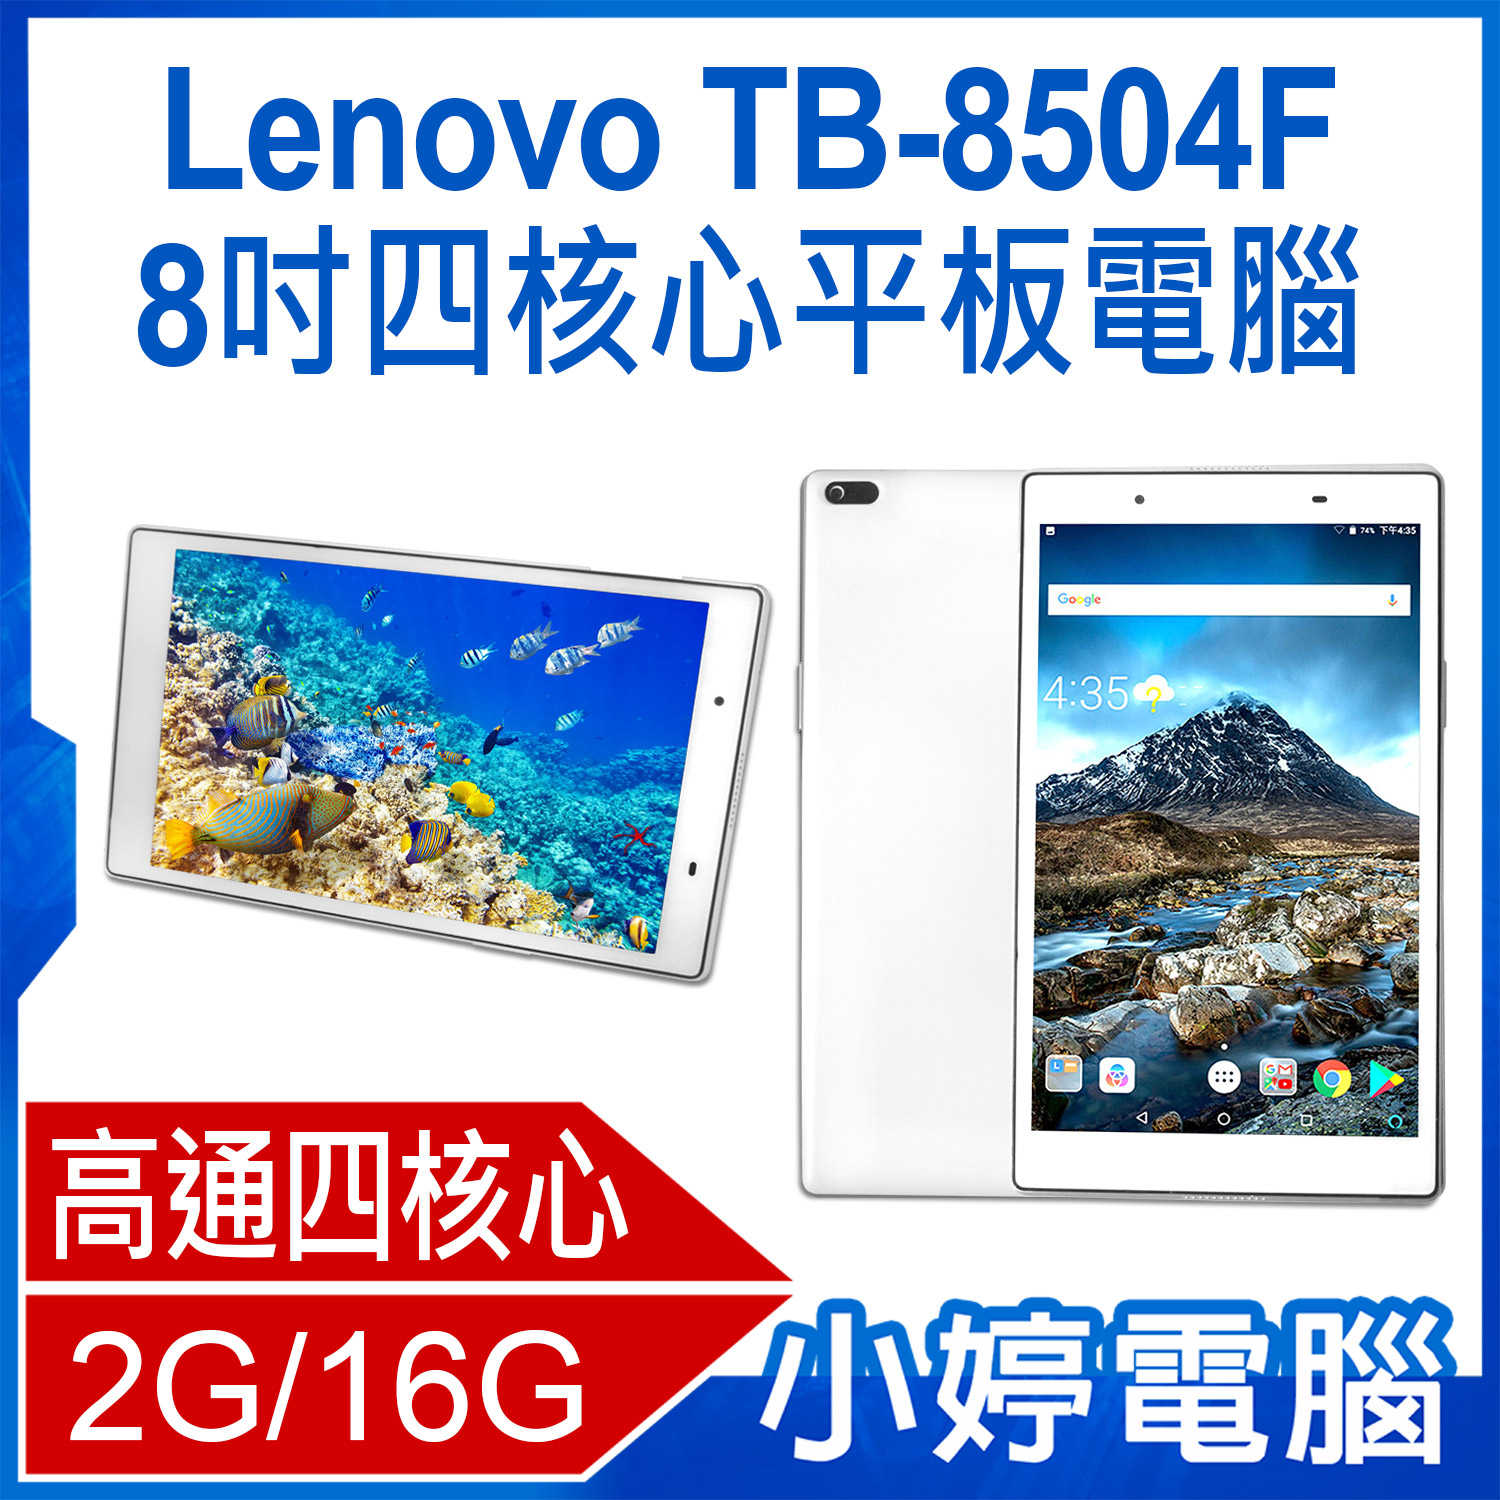 【小婷電腦】Lenovo TB-8504F 8吋四核心平板電腦 2G/16G IPS面板 安卓7.1.1